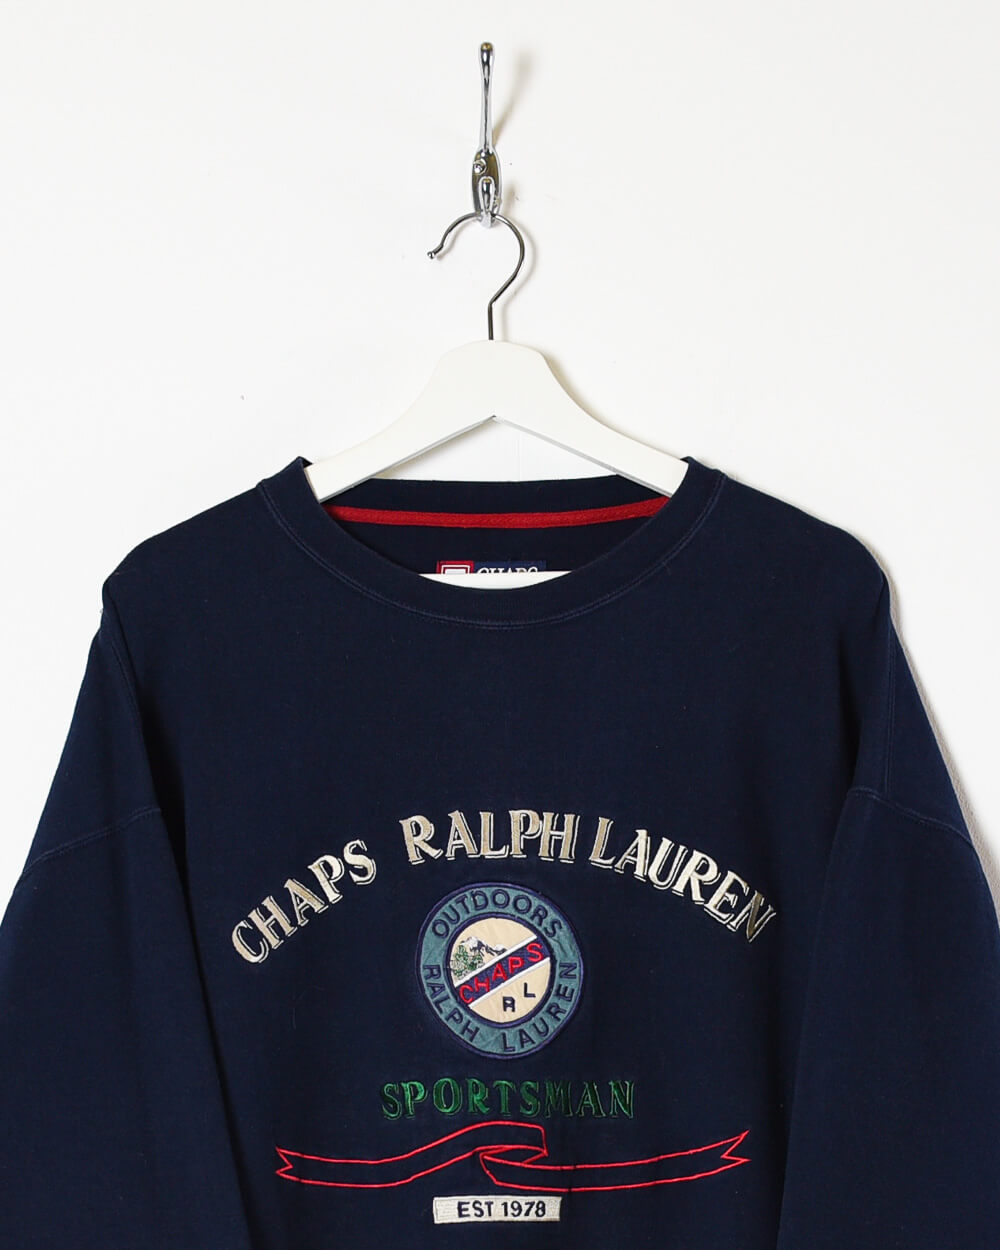 Vintage Chaps Ralph Lauren Crewneck Sweatshirt – ROMAN